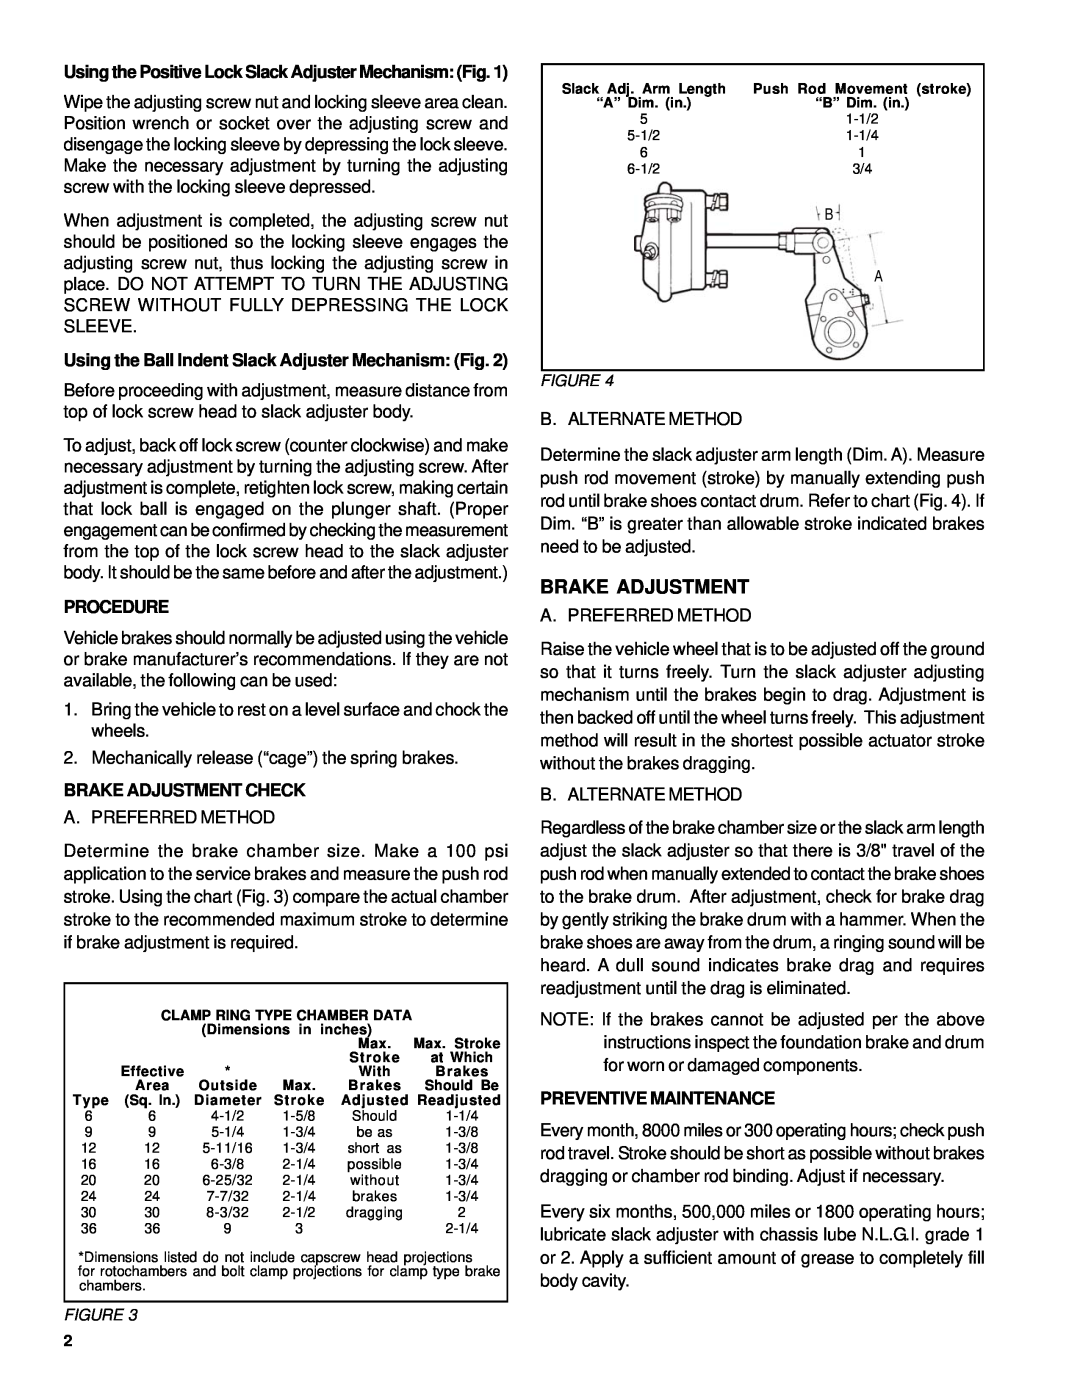 BENDIX SD-05-1200 manual Using the Ball Indent Slack Adjuster Mechanism Fig, Procedure, Brake Adjustment Check 